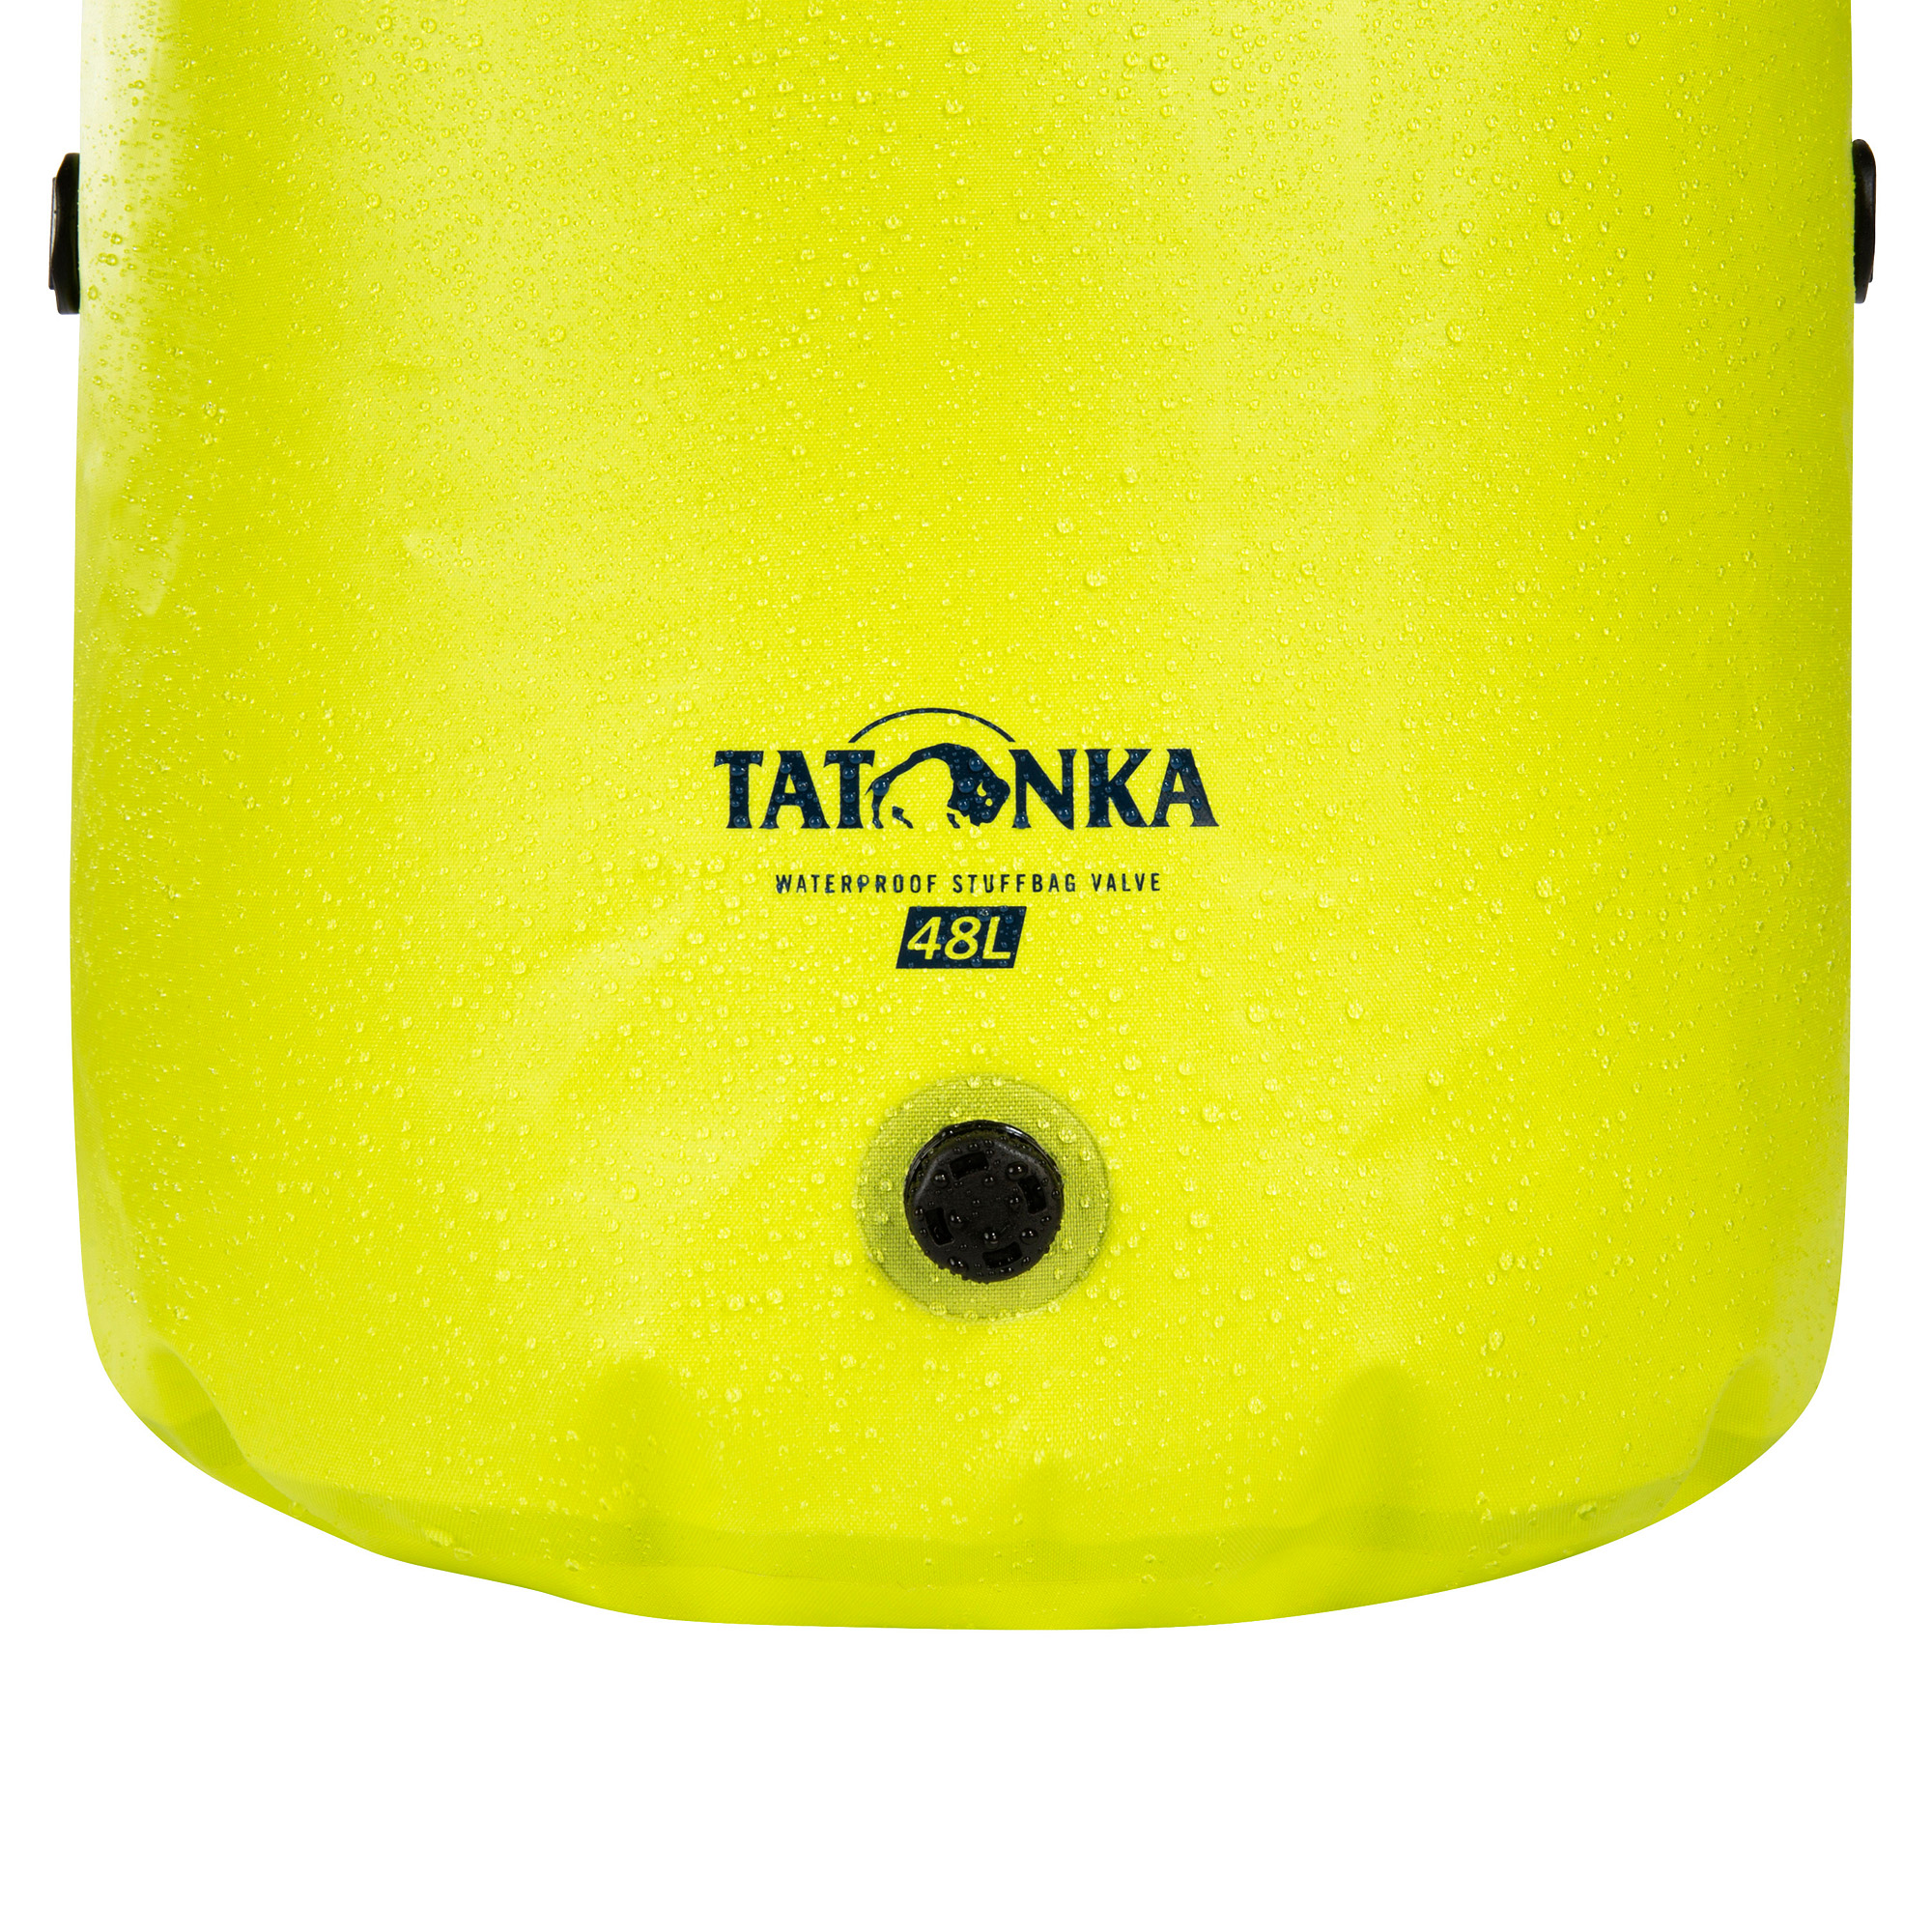 Tatonka WP Stuffbag Valve 48l lime gelb Reisezubehör 4013236393651